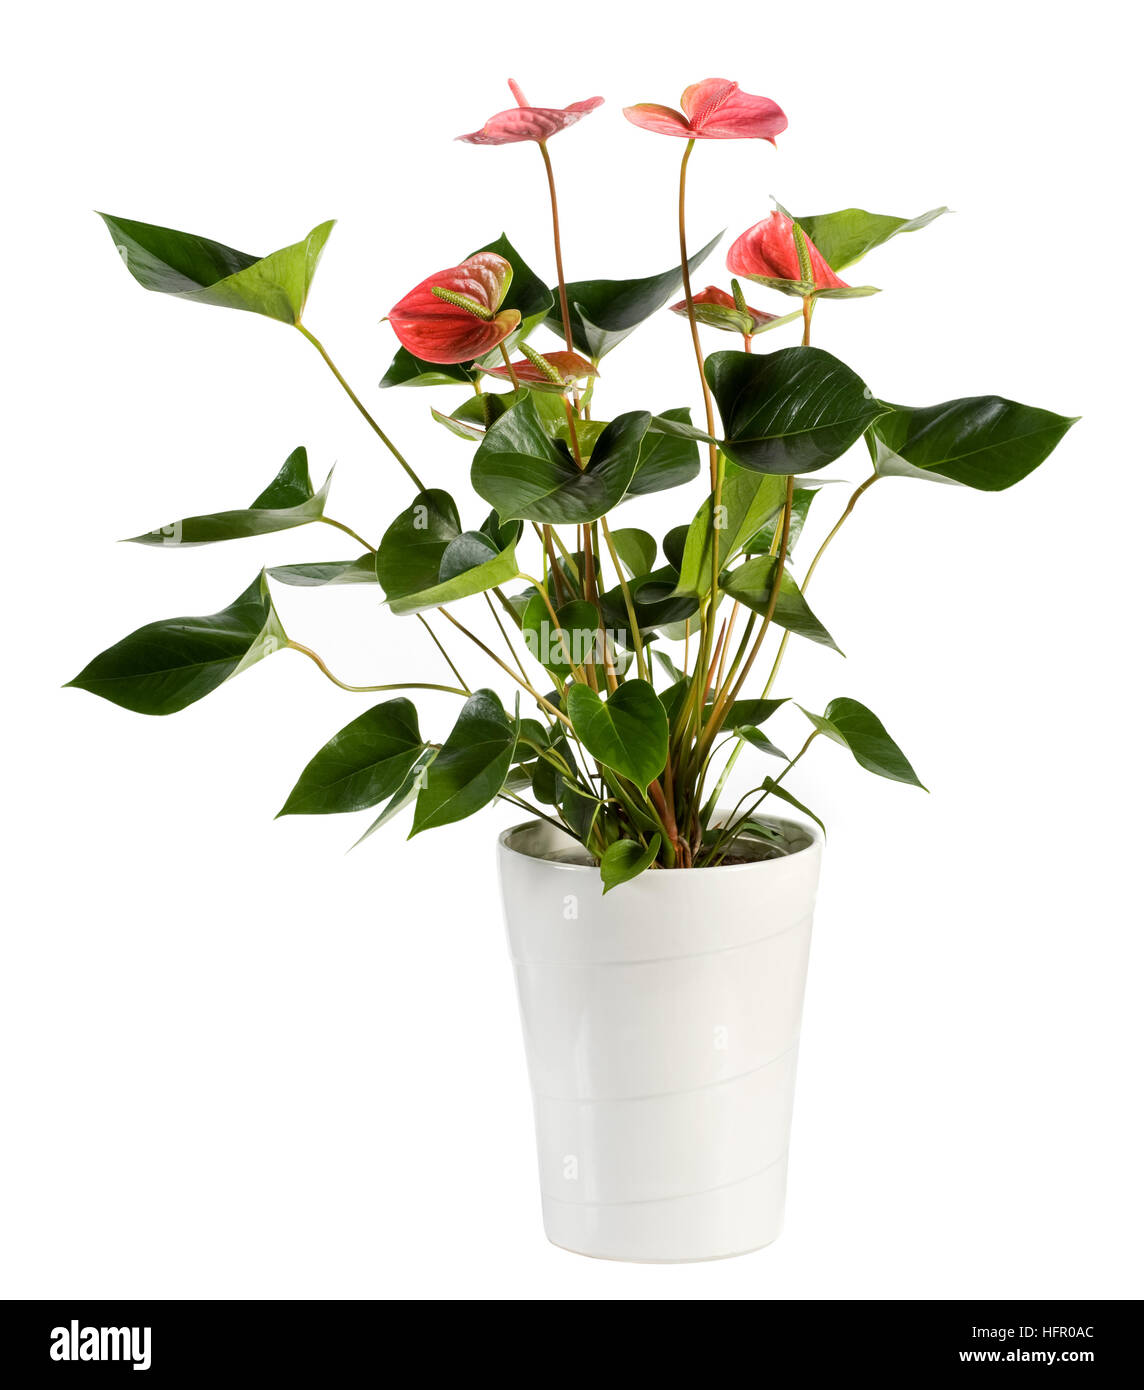 Schließen Sie sich attraktive Gattung Anthurium Blume Pflanze, Konwn als Flamingo-Blume, auf weißen Topf isoliert auf weißem Hintergrund. Stockfoto